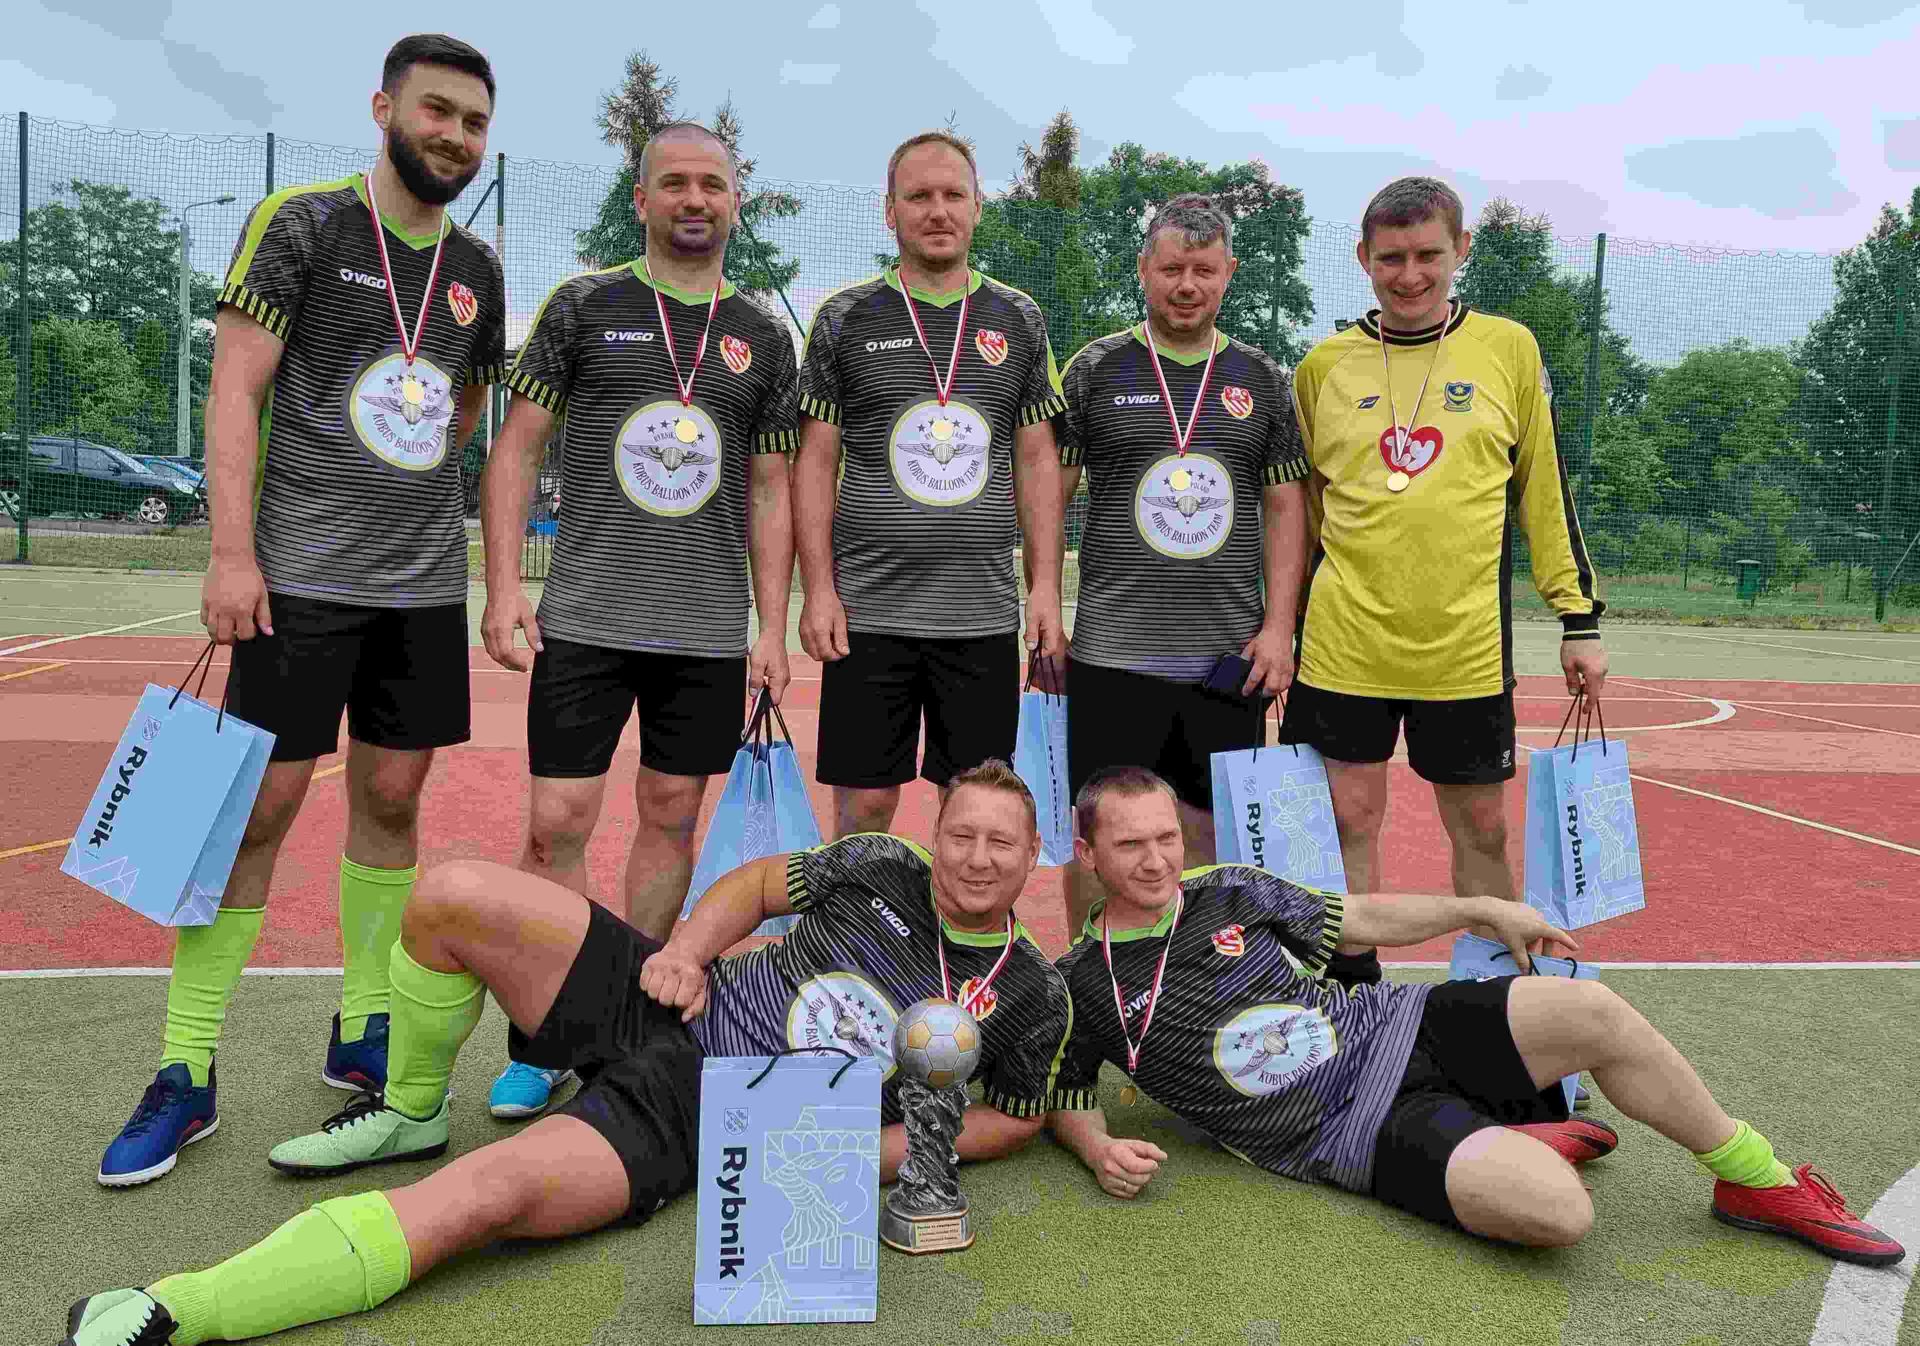 Piłkarska reprezentacja dzielnicy Ochojec, zwycięzca tegorocznego Mundialu dla dzielnic